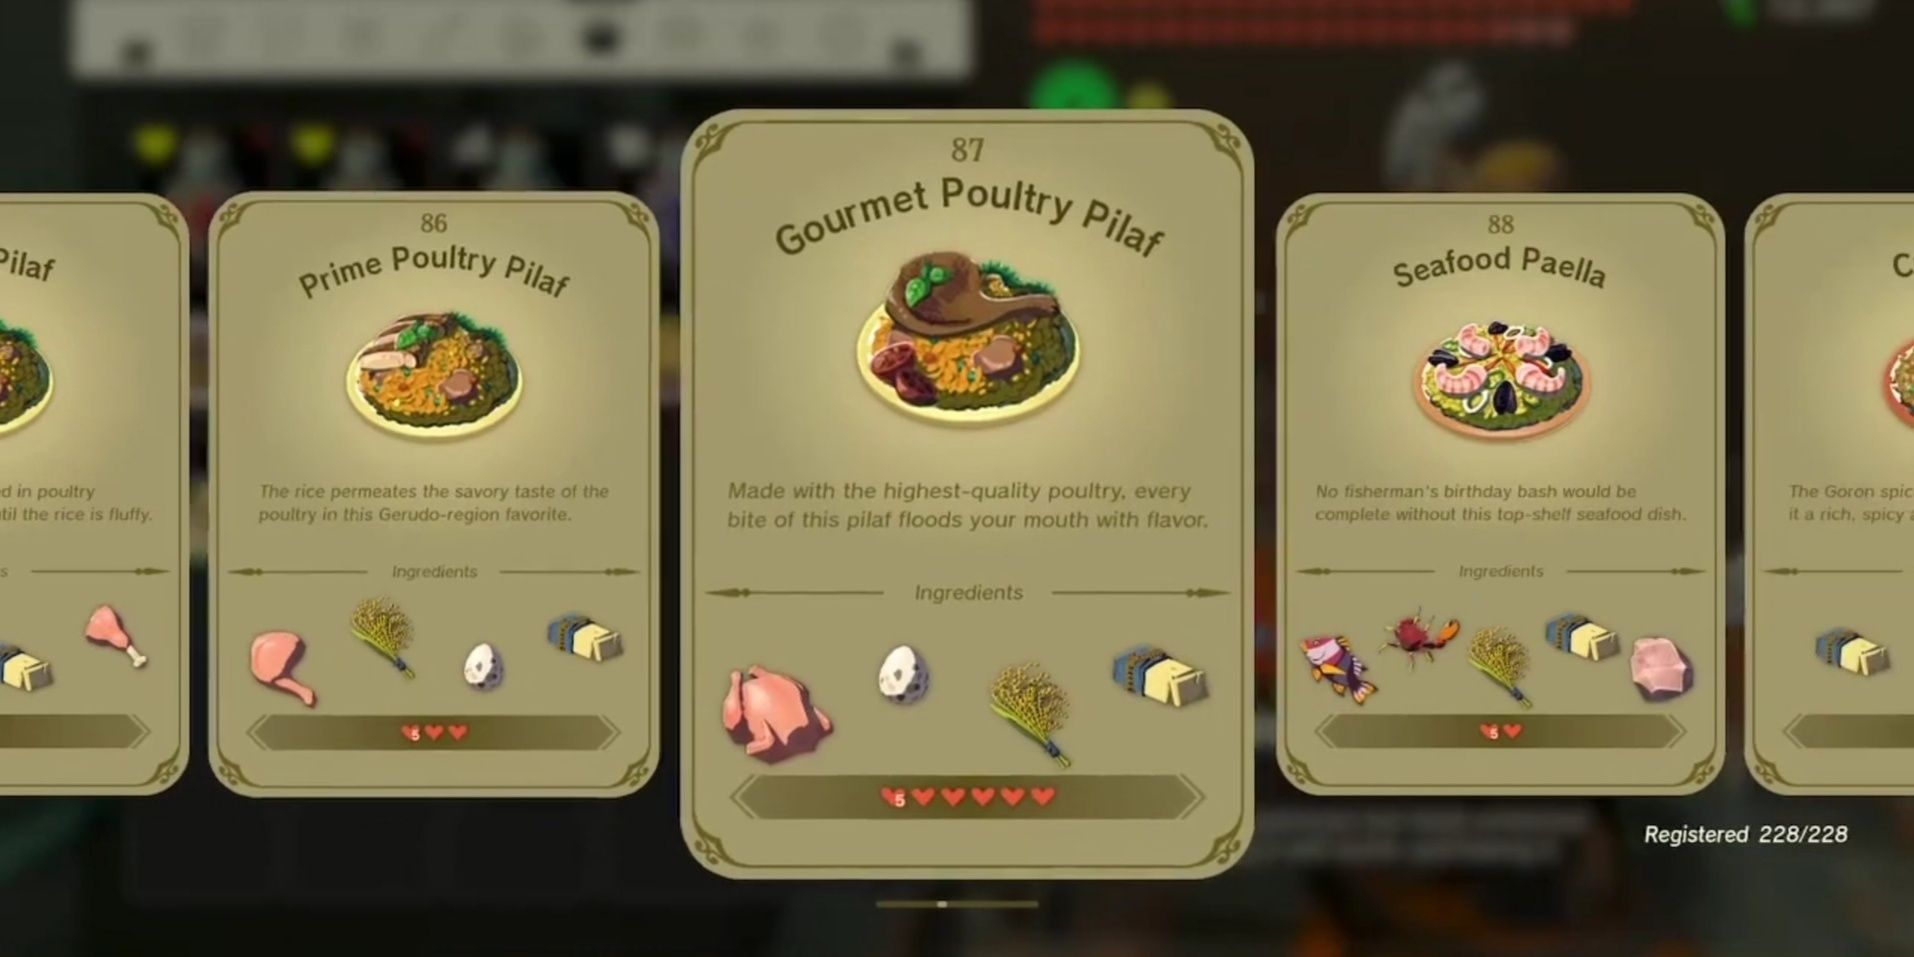 TOTK Best Health Food- Gourmet Poultry Pilaf